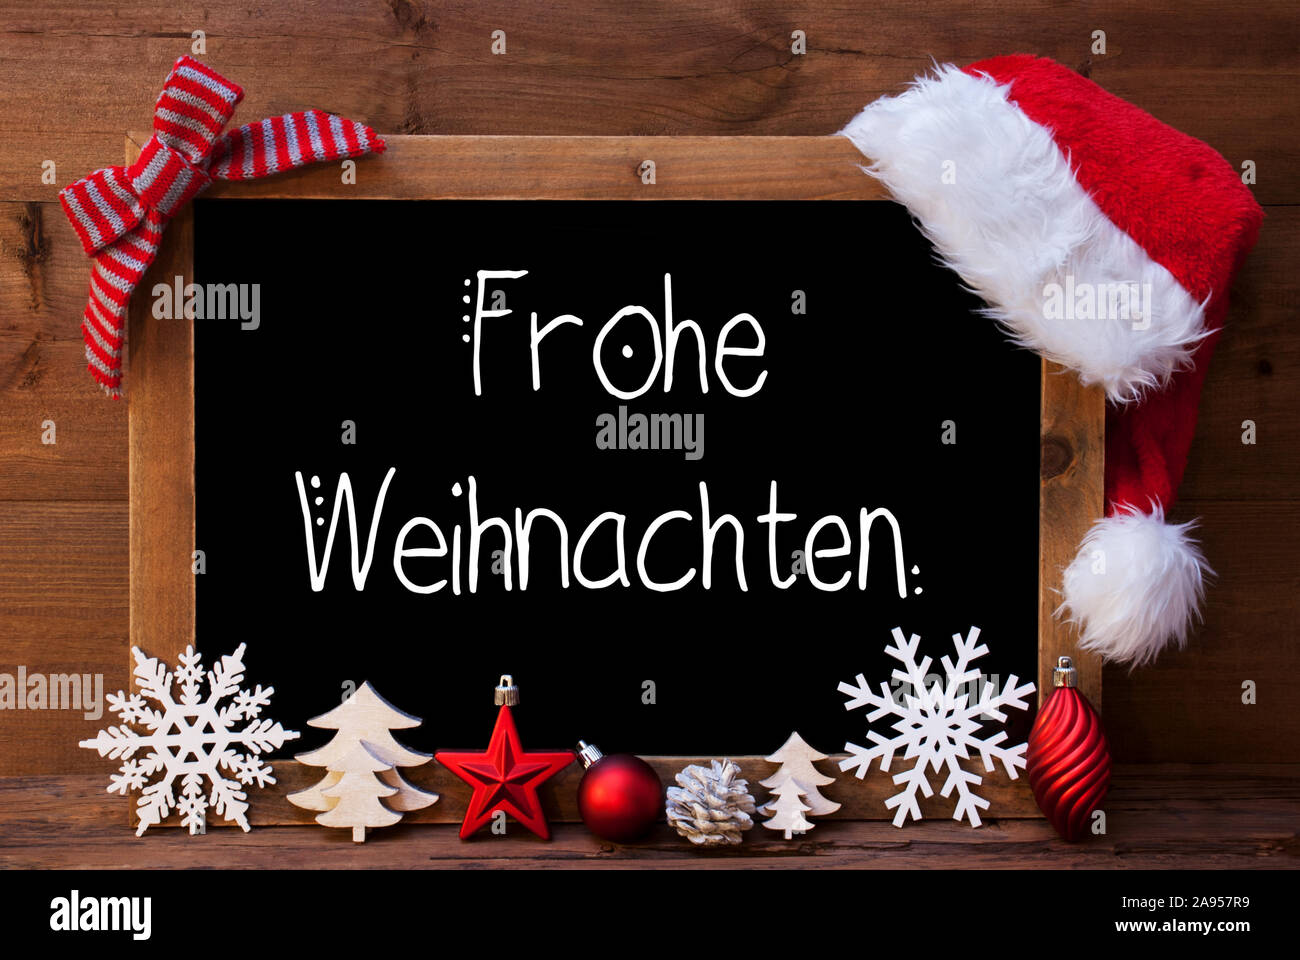 Lavagna, decorazione, palla rossa, Frohe Weihnachten significa Buon Natale  Foto stock - Alamy